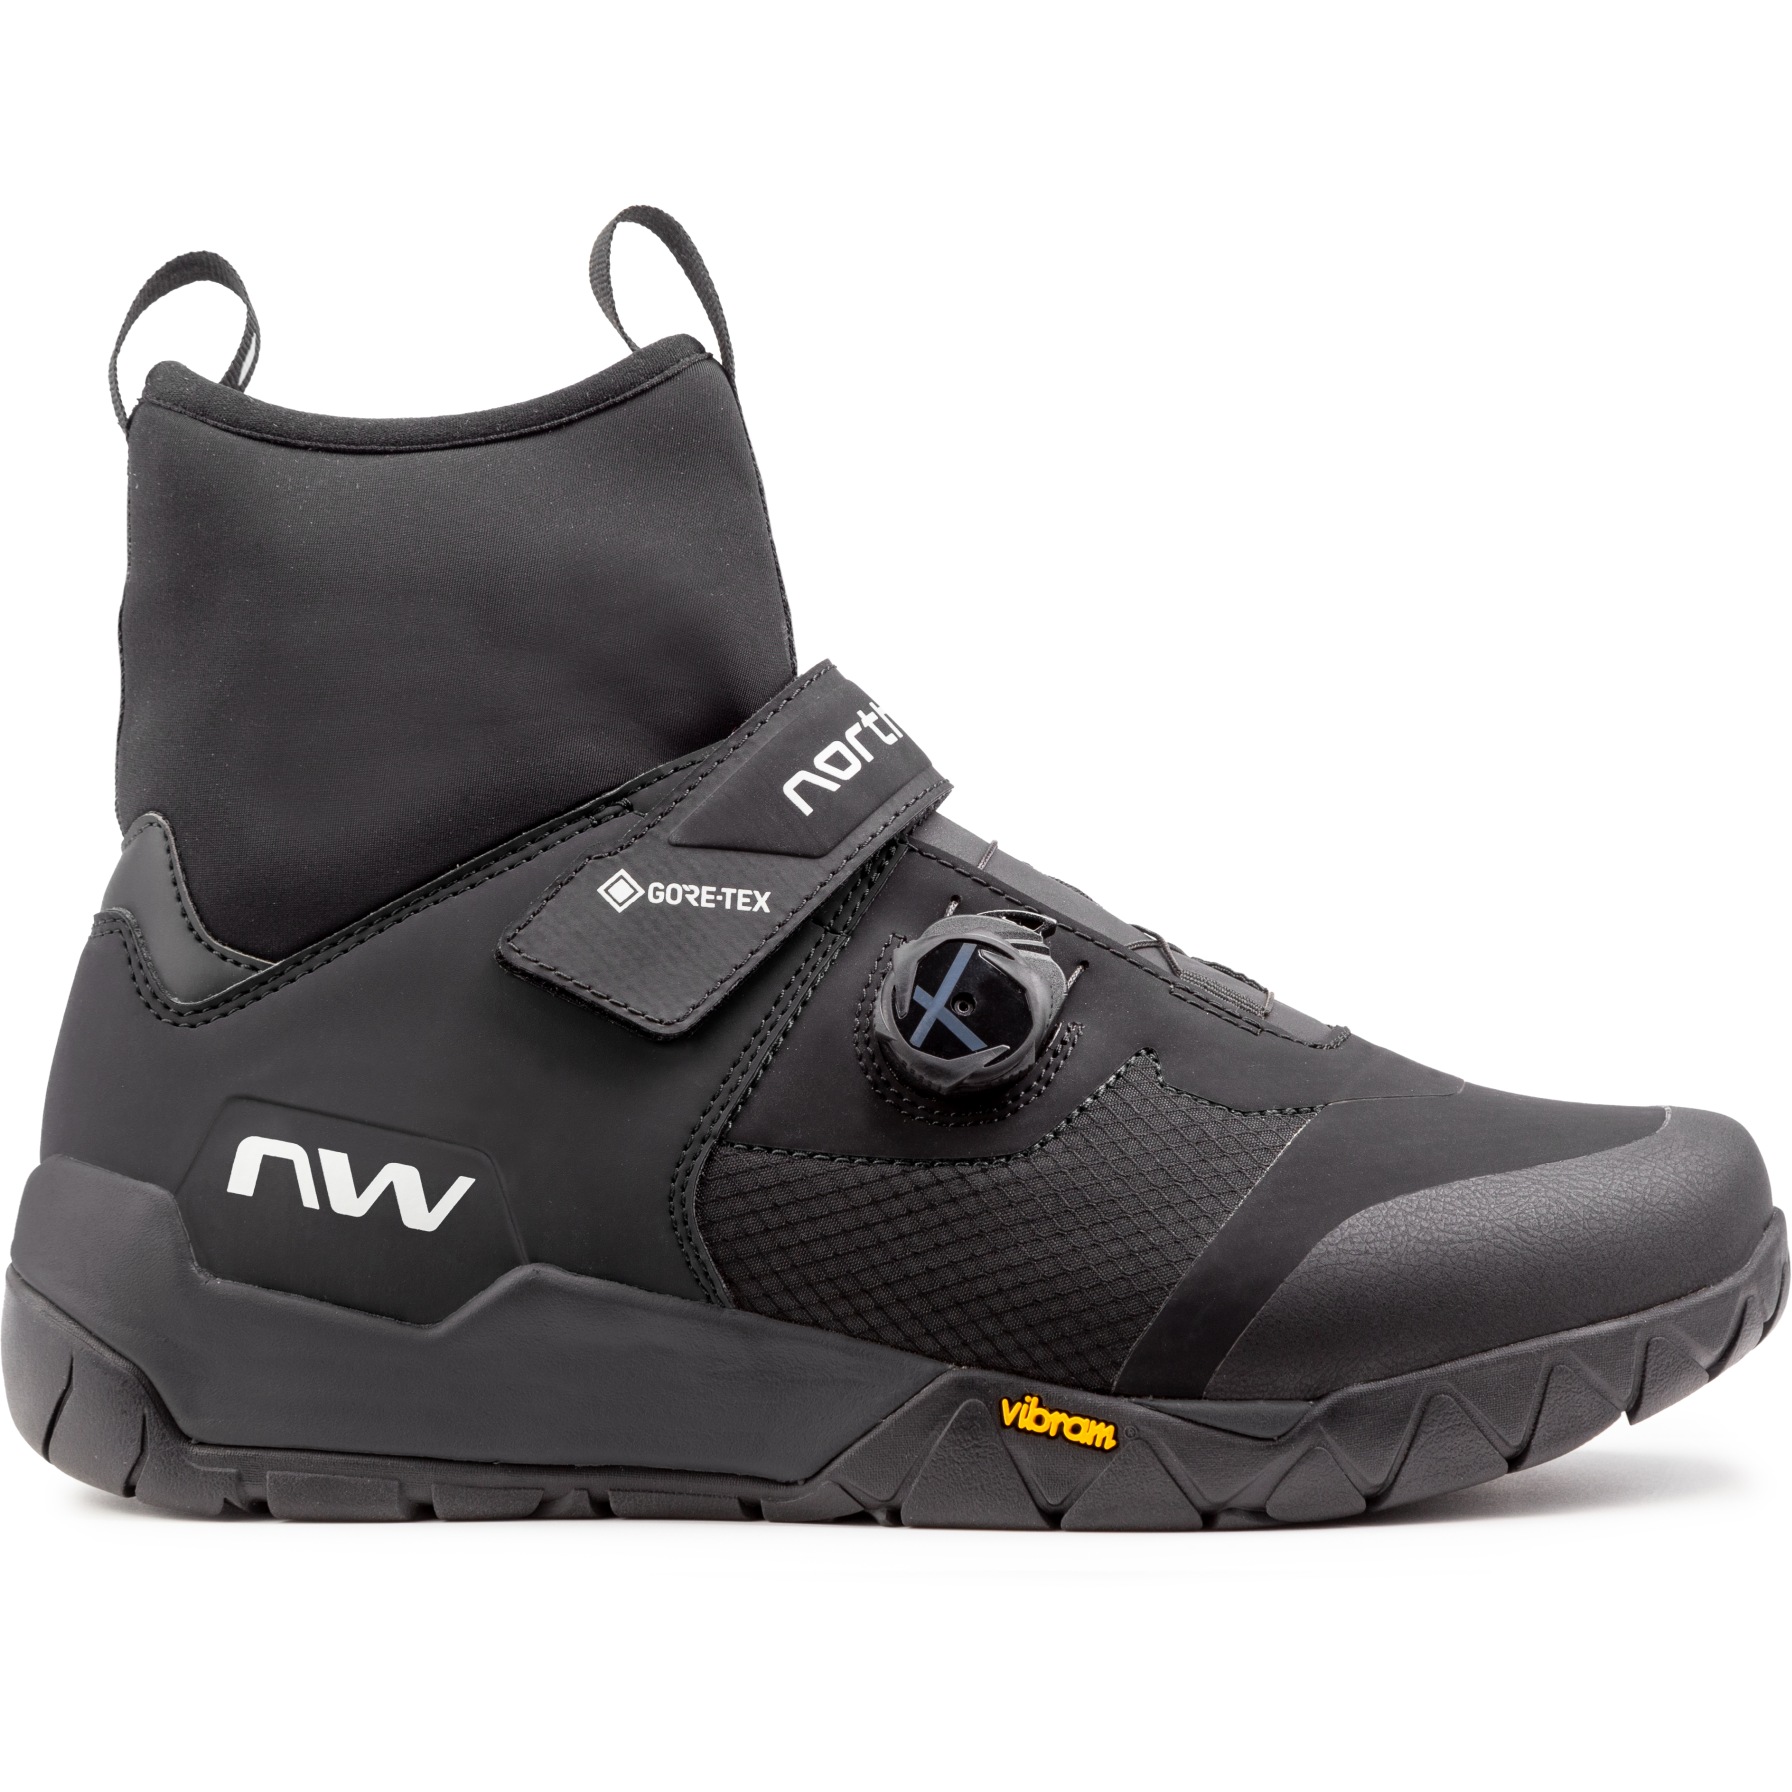 Produktbild von Northwave Multicross Plus GTX Trail Schuhe Herren - schwarz 10